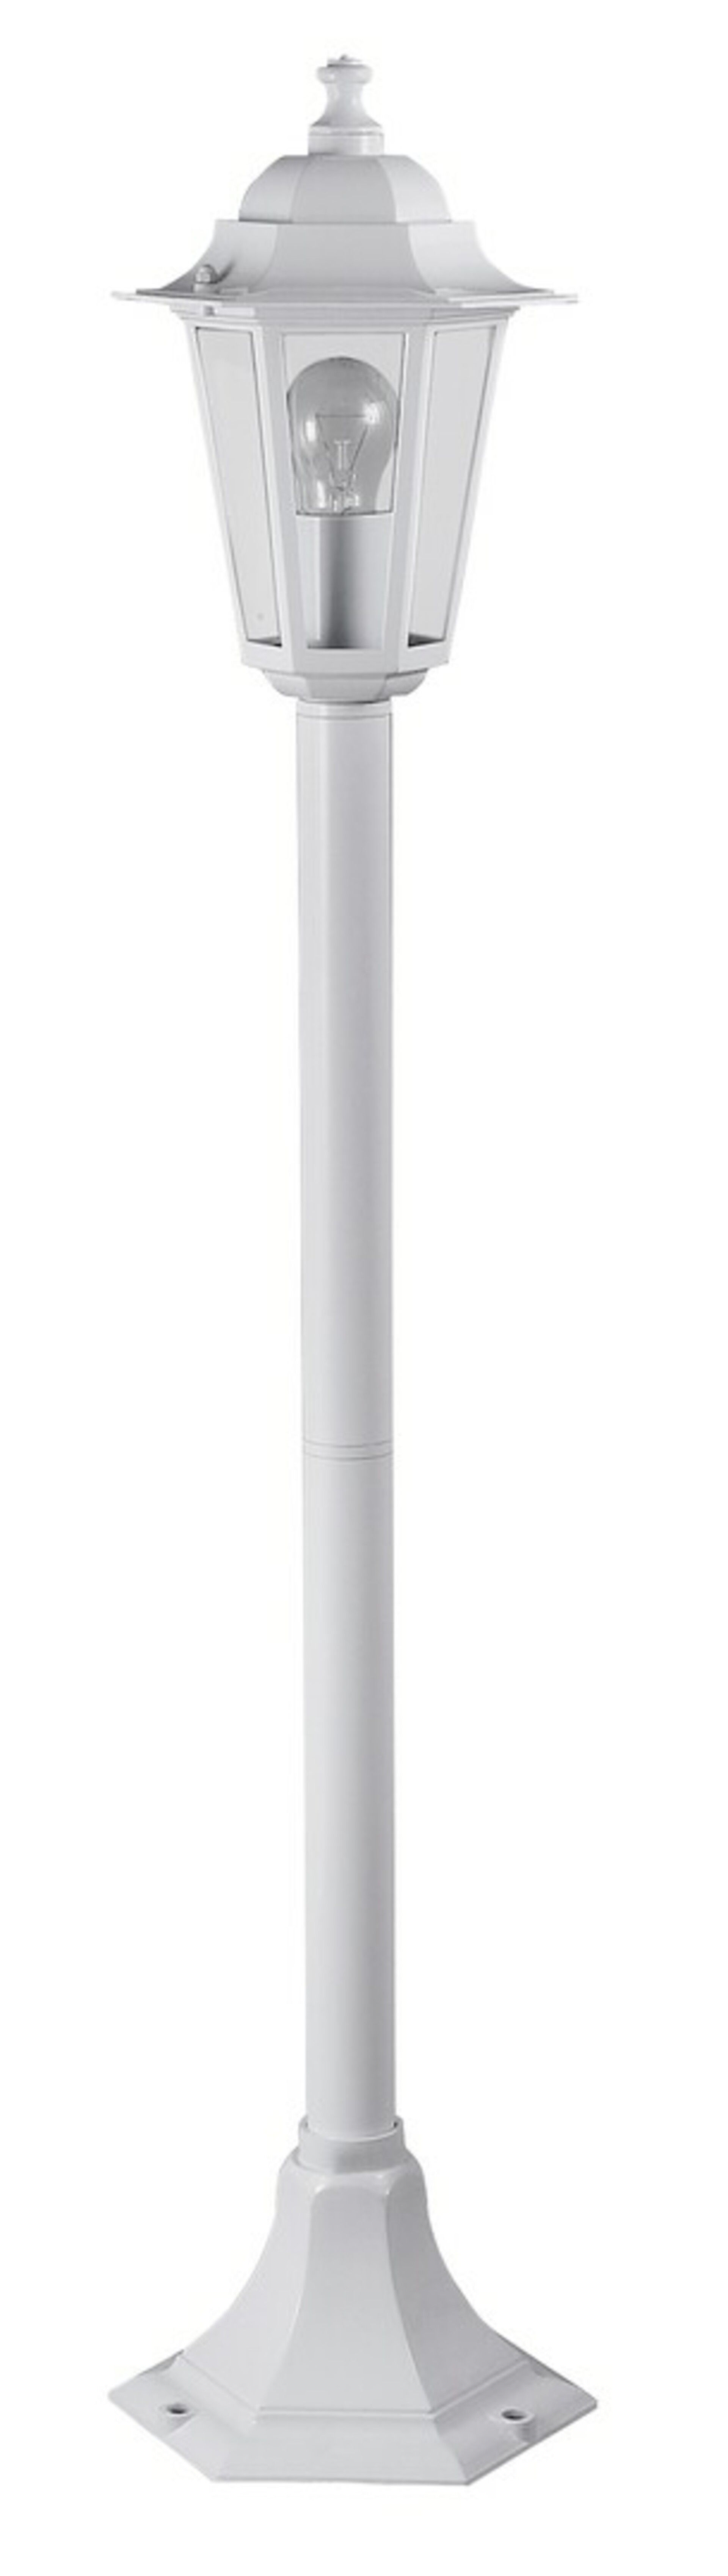 Rabalux venkovní sloupkové svítidlo Velence E27 1x MAX 60W bílá 8209